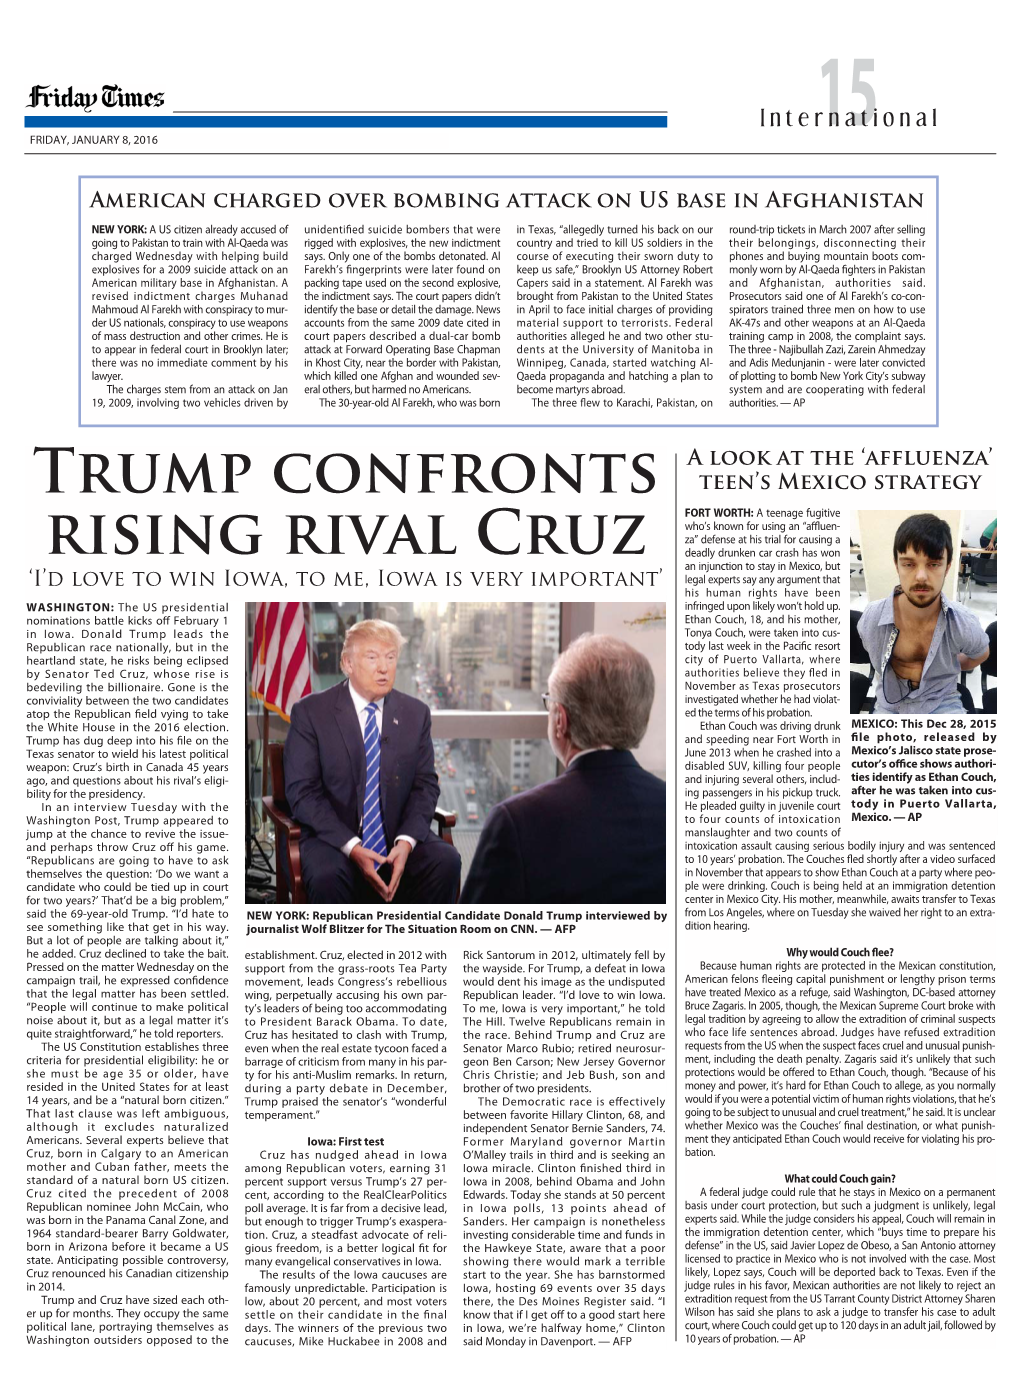 TRUMP Confronts Rising Rival Cruz